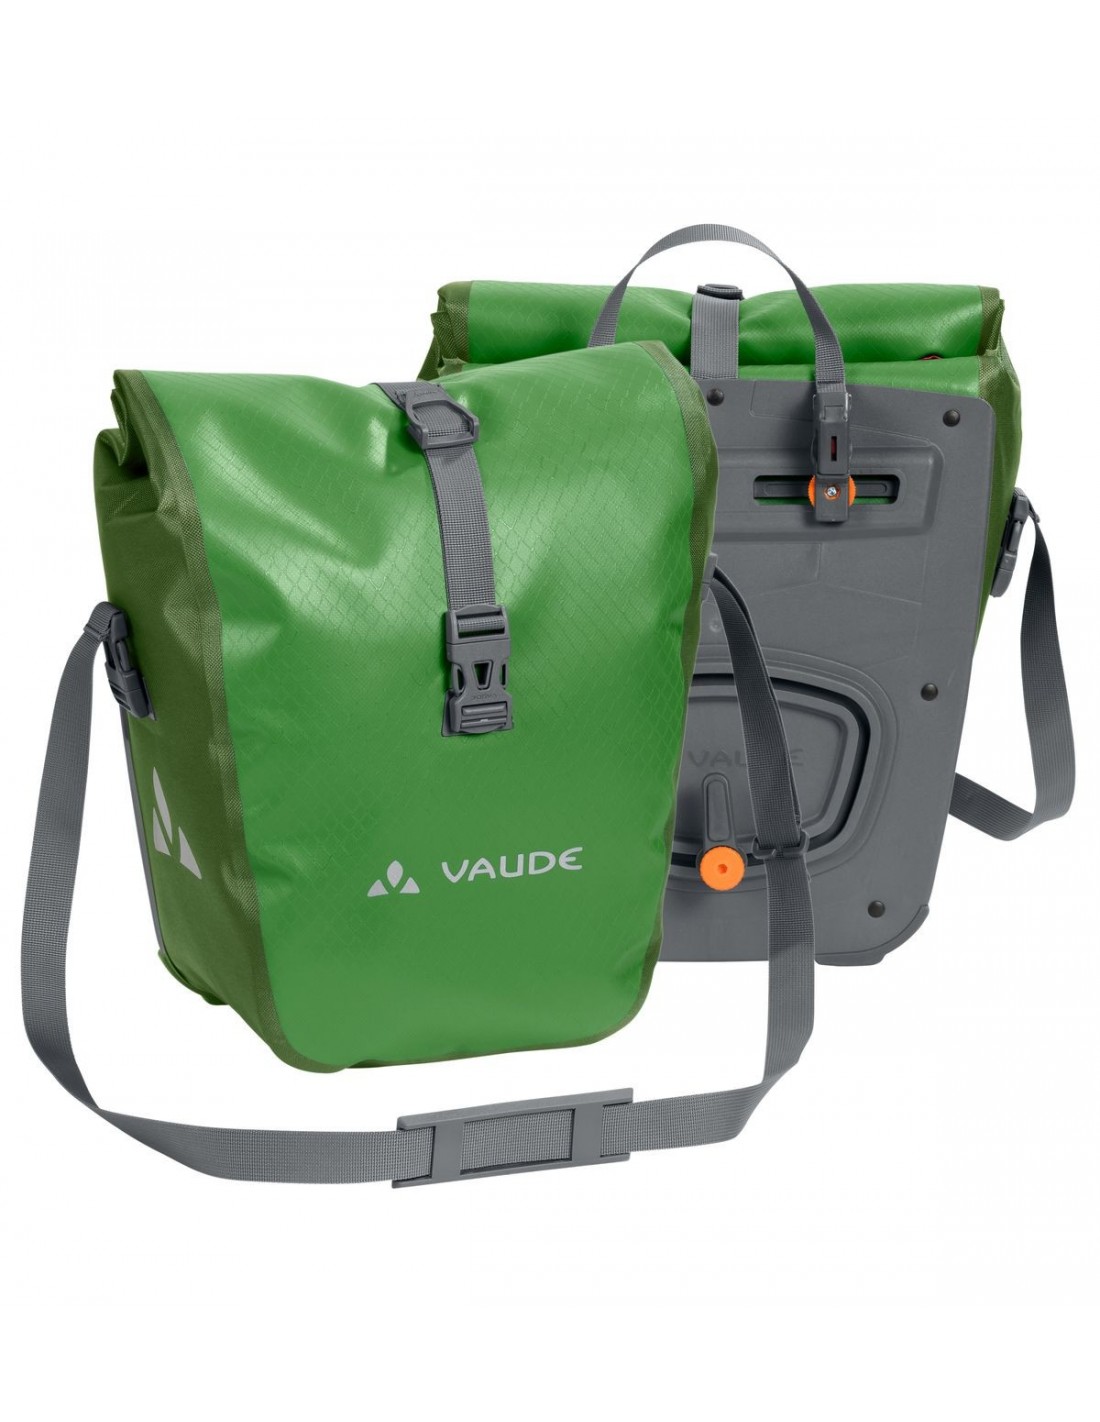 Vaude Aqua Front - Parrot Green Taschenvariante - Gepäckträgertaschen, von Vaude